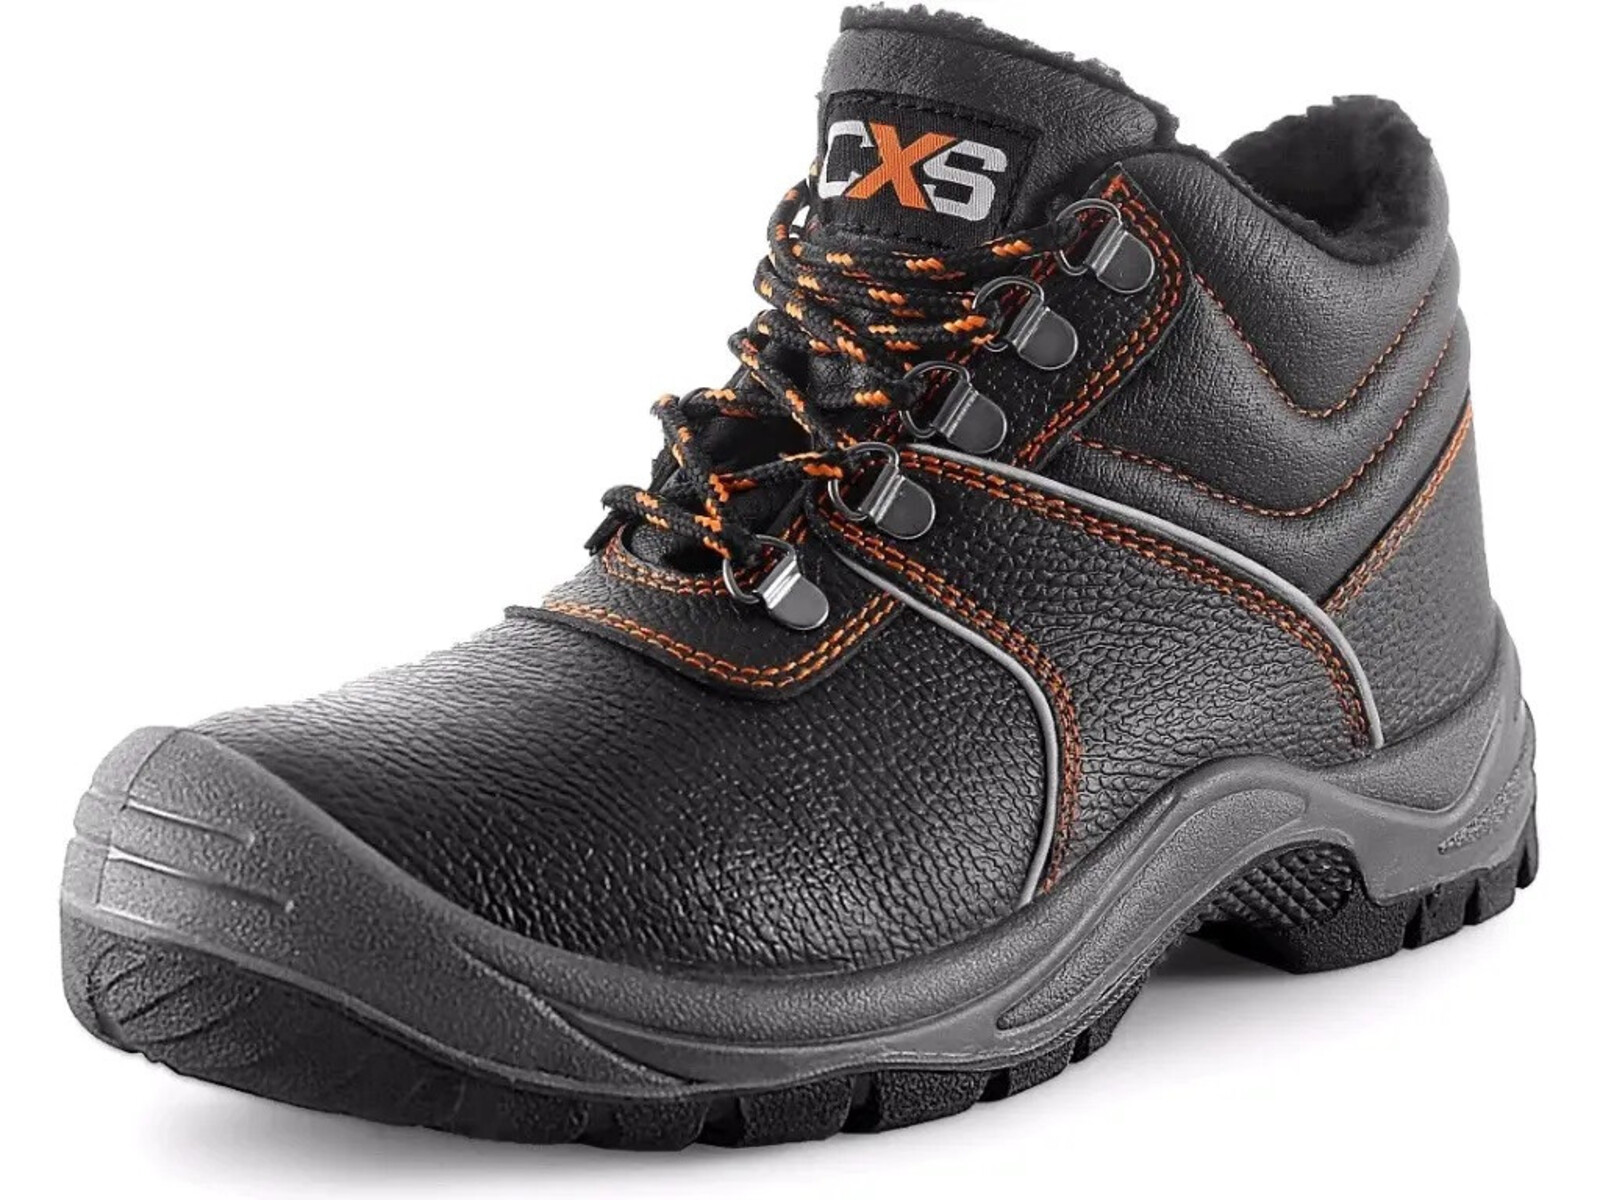 Zimná pracovná členková obuv CXS Stone Apatit Winter O2 FO SRC - veľkosť: 47, farba: čierna/oranžová